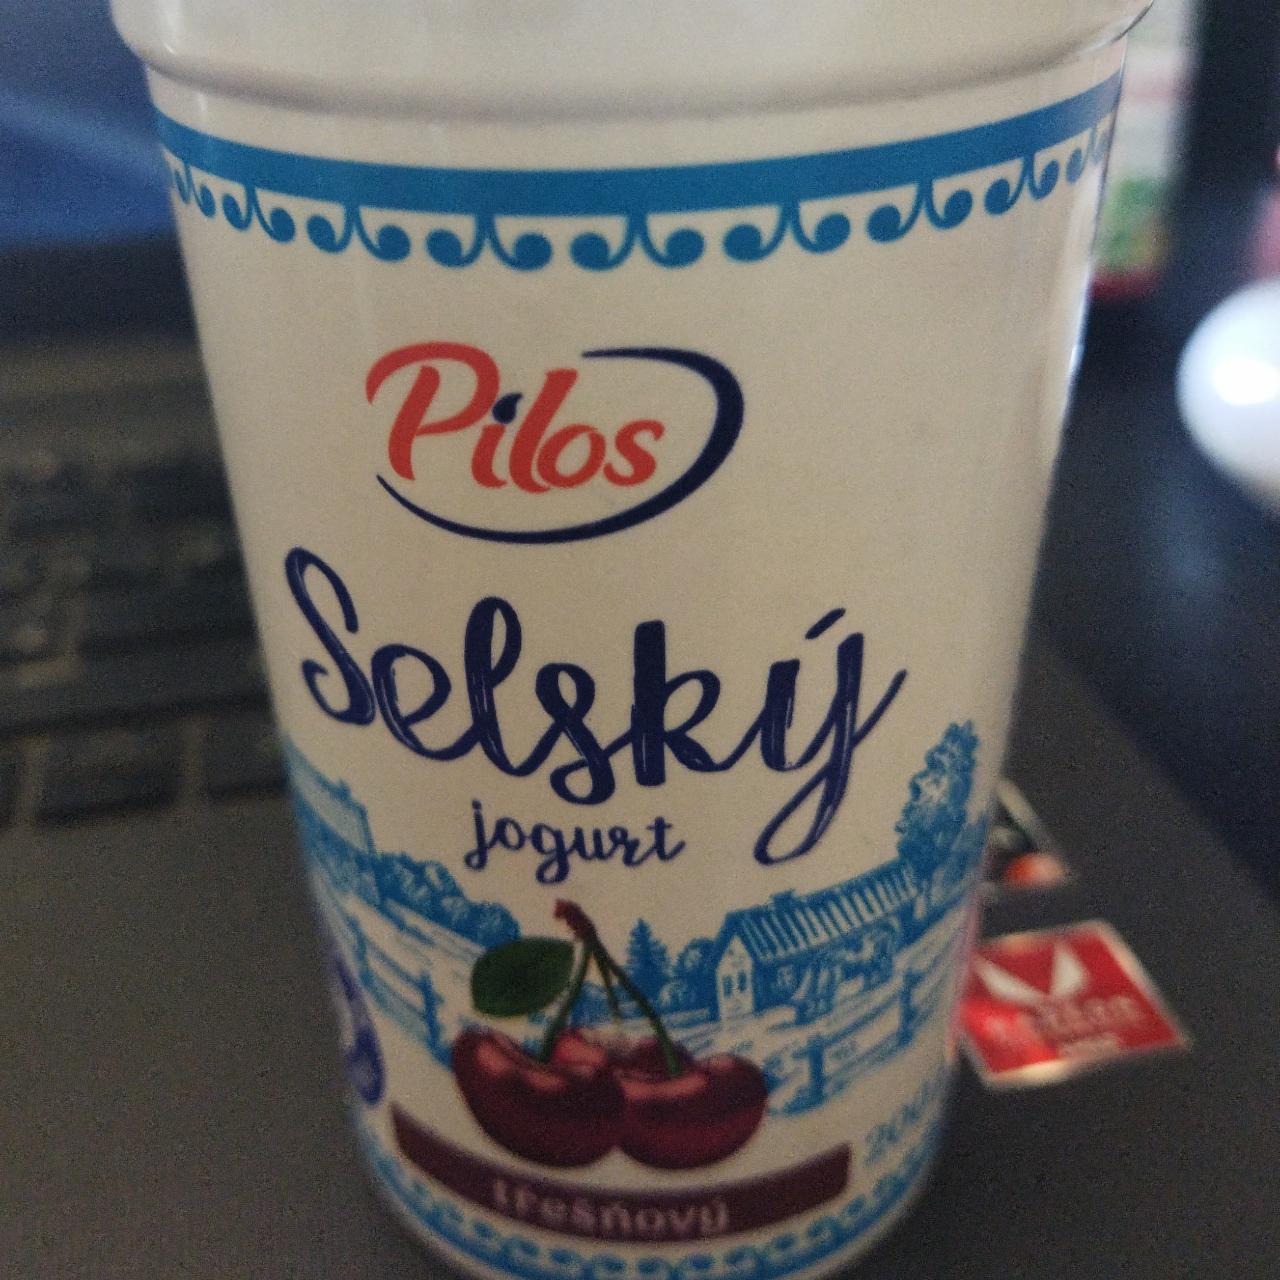 Fotografie - Selský jogurt třešňový Pilos